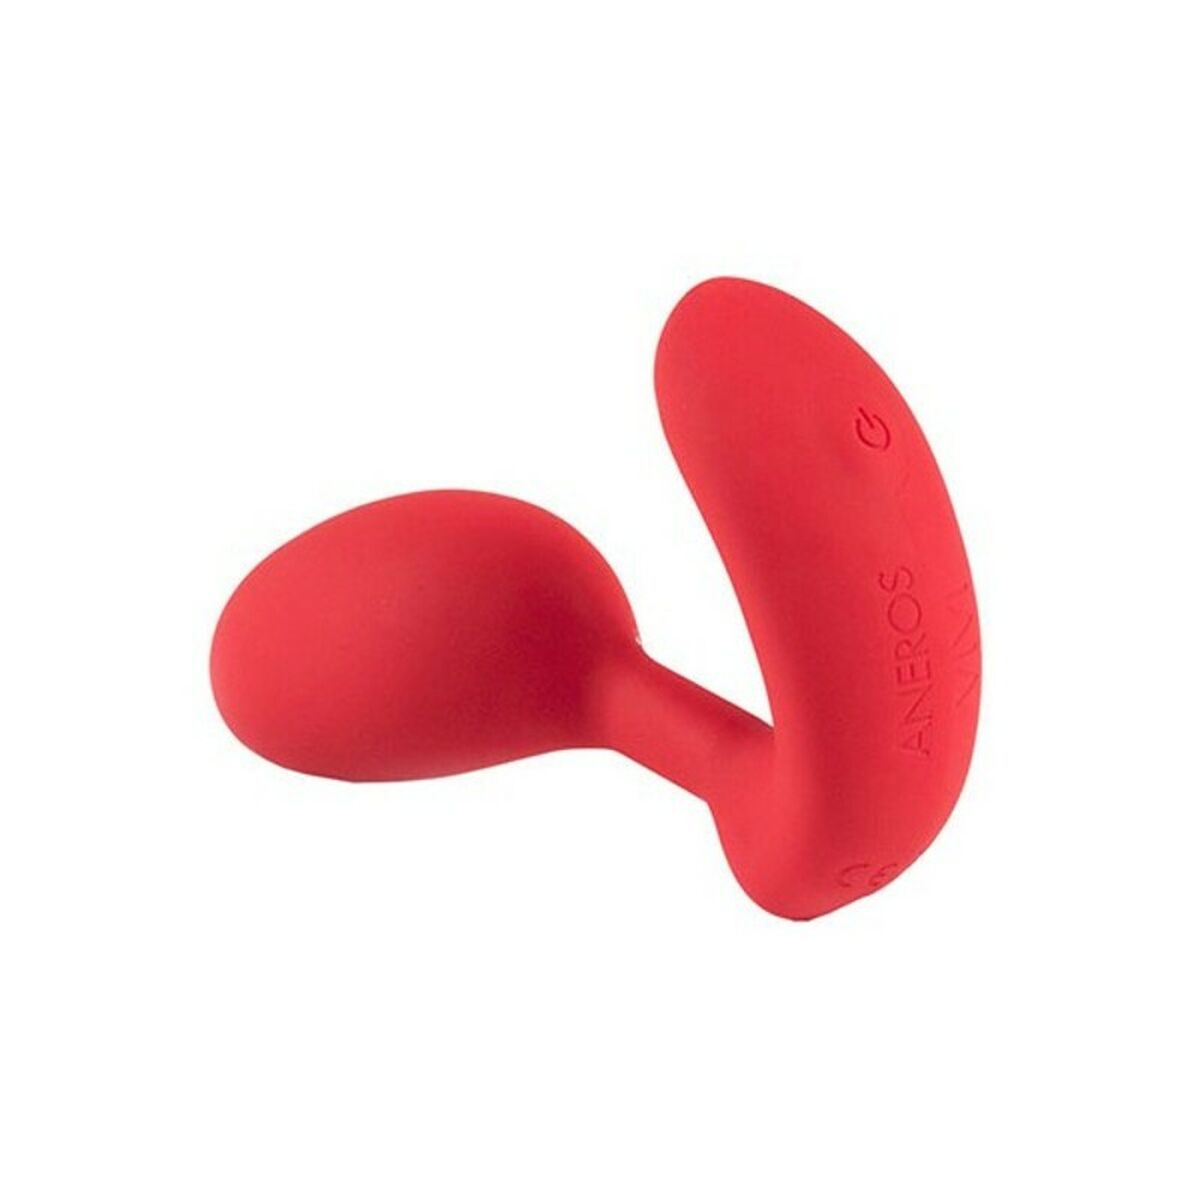 Osta tuote Vivi Set G-Spot Vibraattori Aneros Punainen verkkokaupastamme Korhone: Seksikauppa & Erotiikka 10% alennuksella koodilla KORHONE